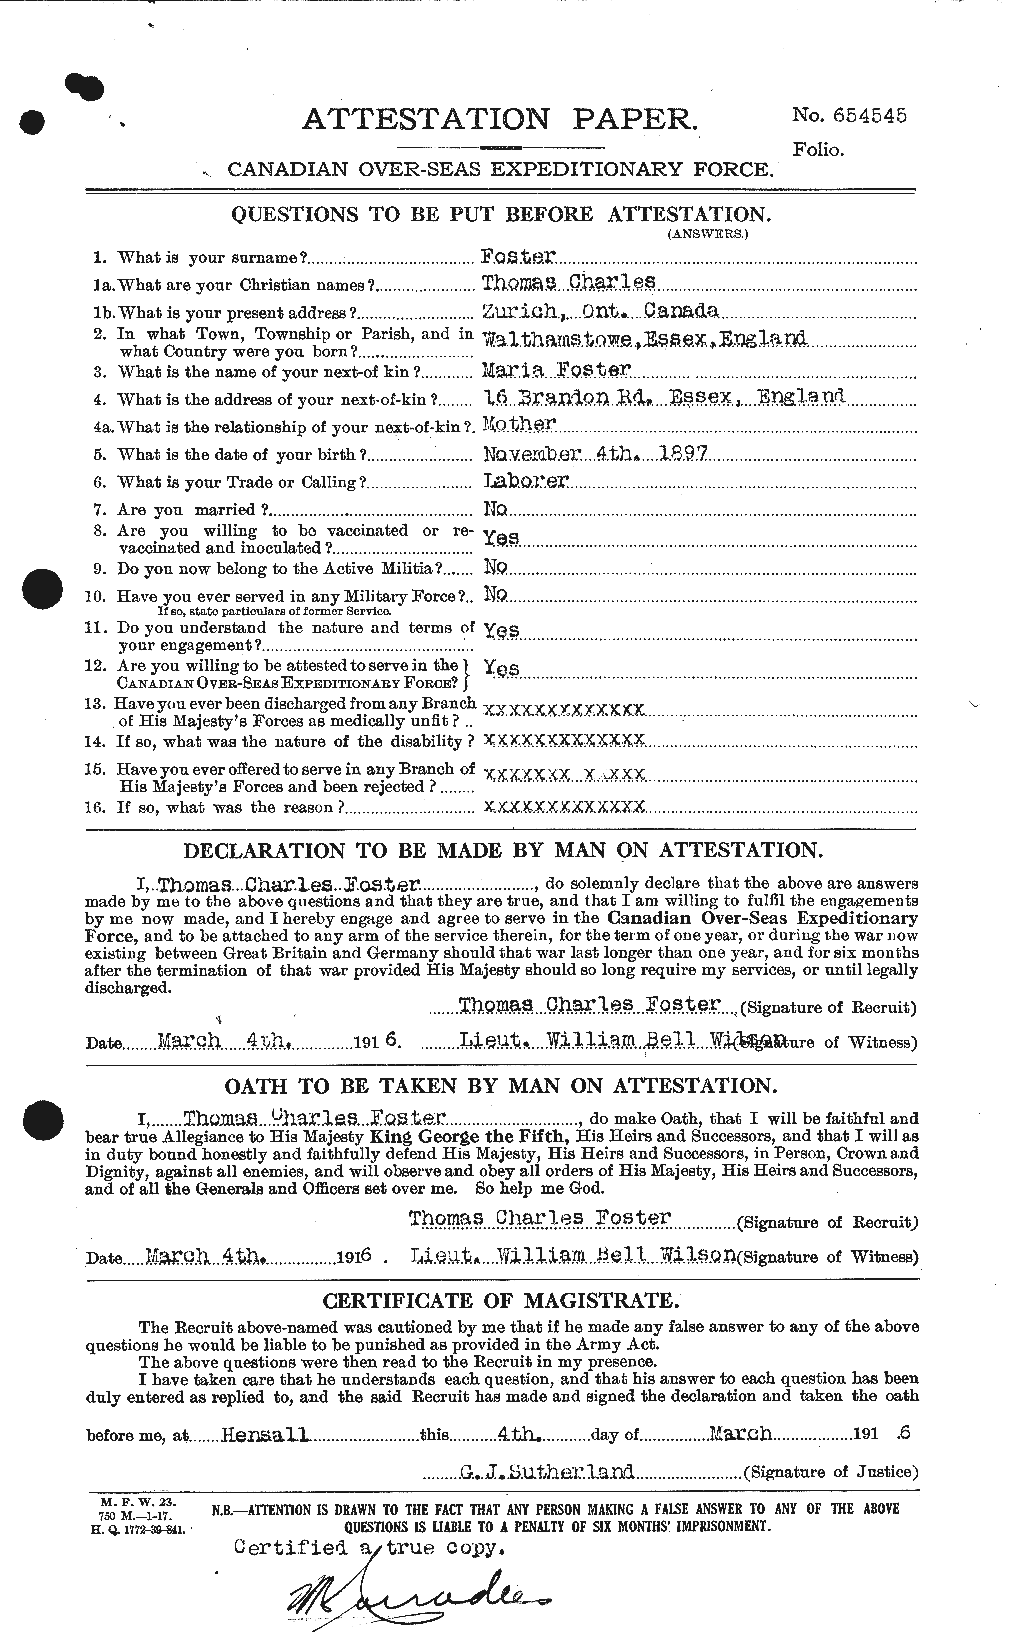 Dossiers du Personnel de la Première Guerre mondiale - CEC 335228a